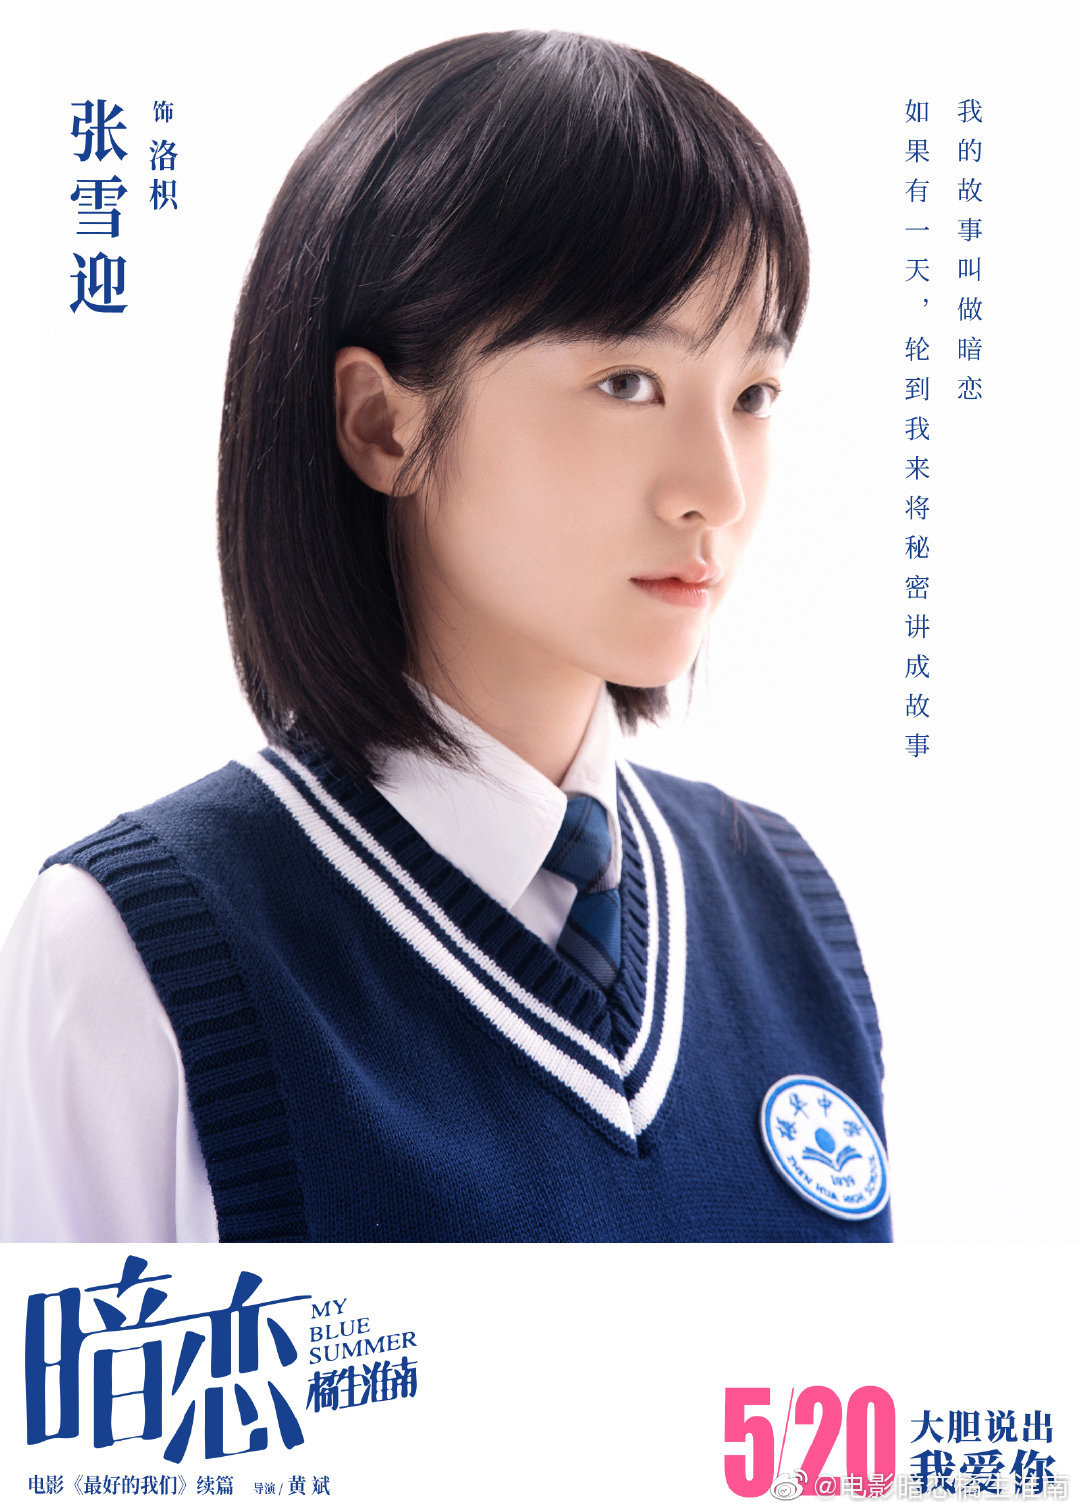 Trương Tuyết Nghênh vào vai Lạc Chỉ - cô nữ sinh khoa Văn đem lòng yêu thầm cậu bạn điển trai, học giỏi cùng trường tới ba năm nhưng không dám bày tỏ.